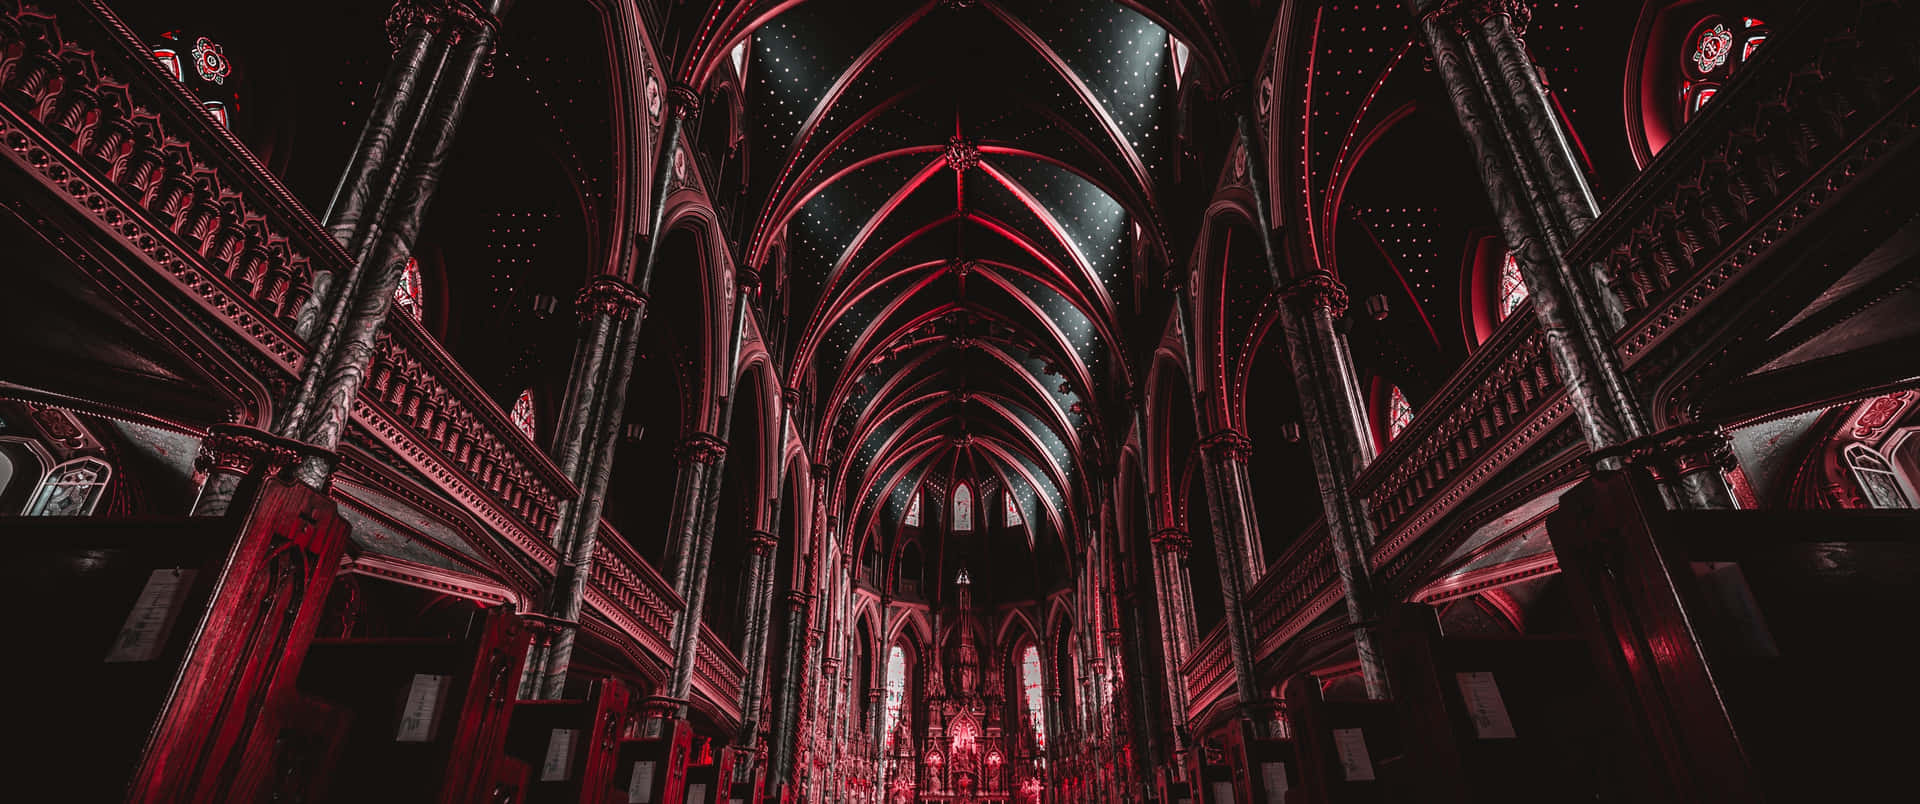 Interioresgóticos Editados De La Catedral De Notre Dame. Fondo de pantalla